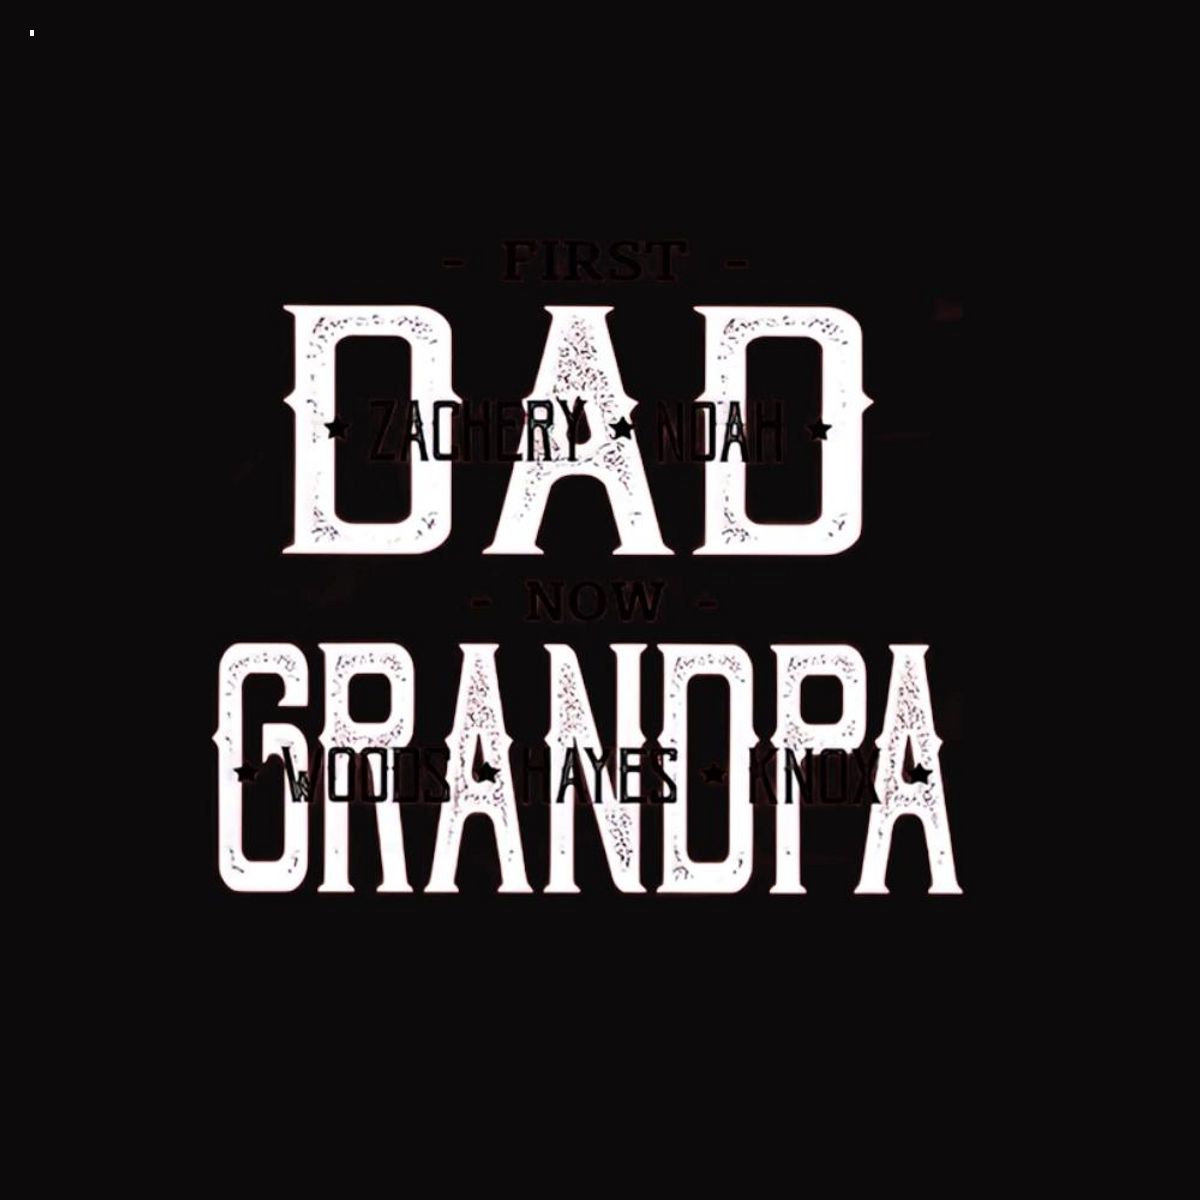 Lovelypod - First Dad Now Grandpa Shirt